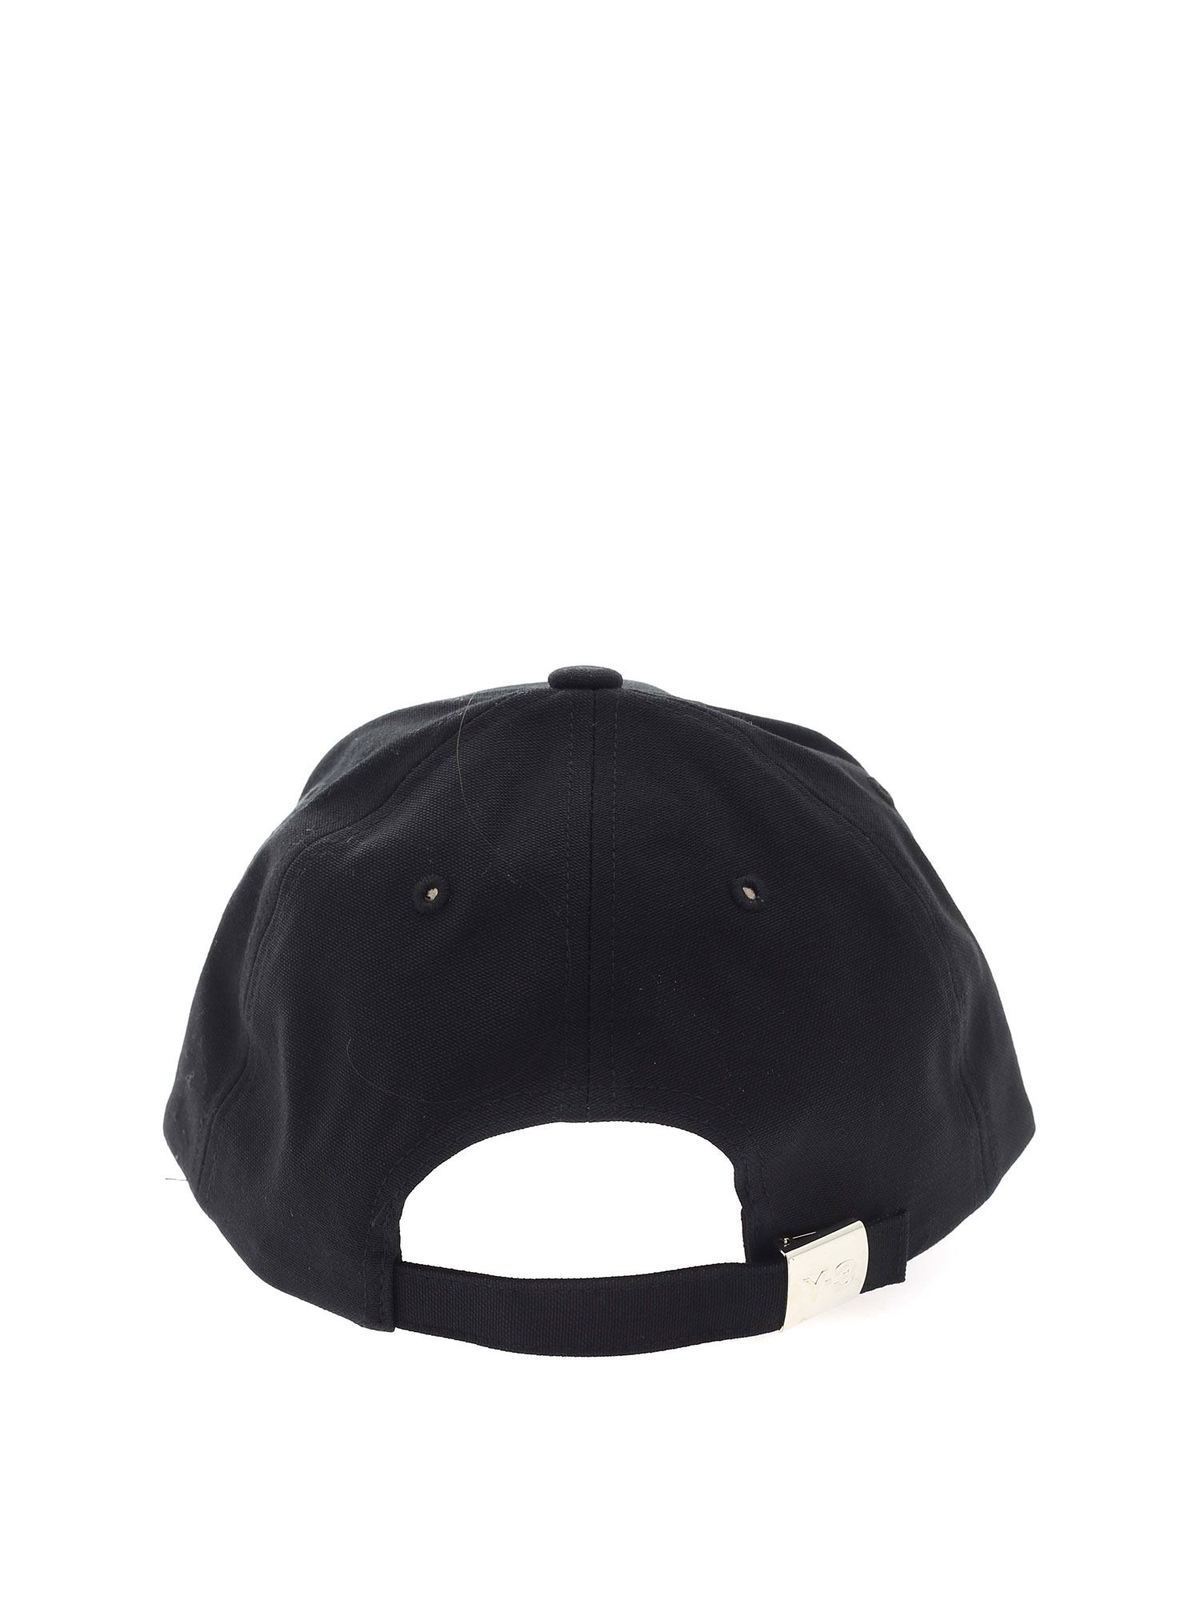 Hats & caps Y-3 - Classic Logo cap - GK0626 | Shop online at THEBS